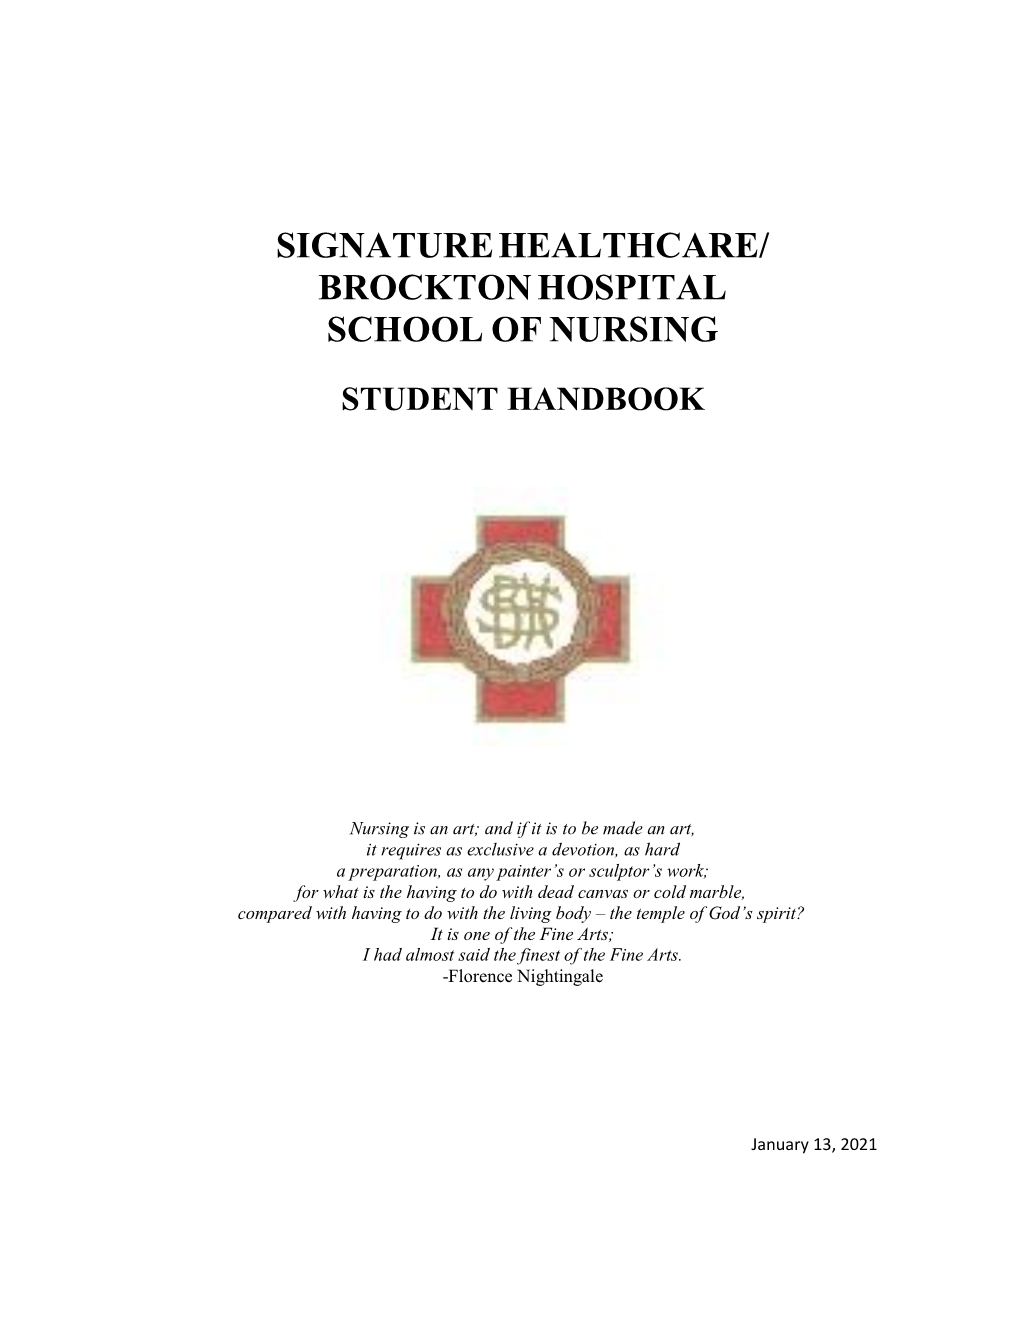 Brockton Hospital School of Nursing Student Handbook